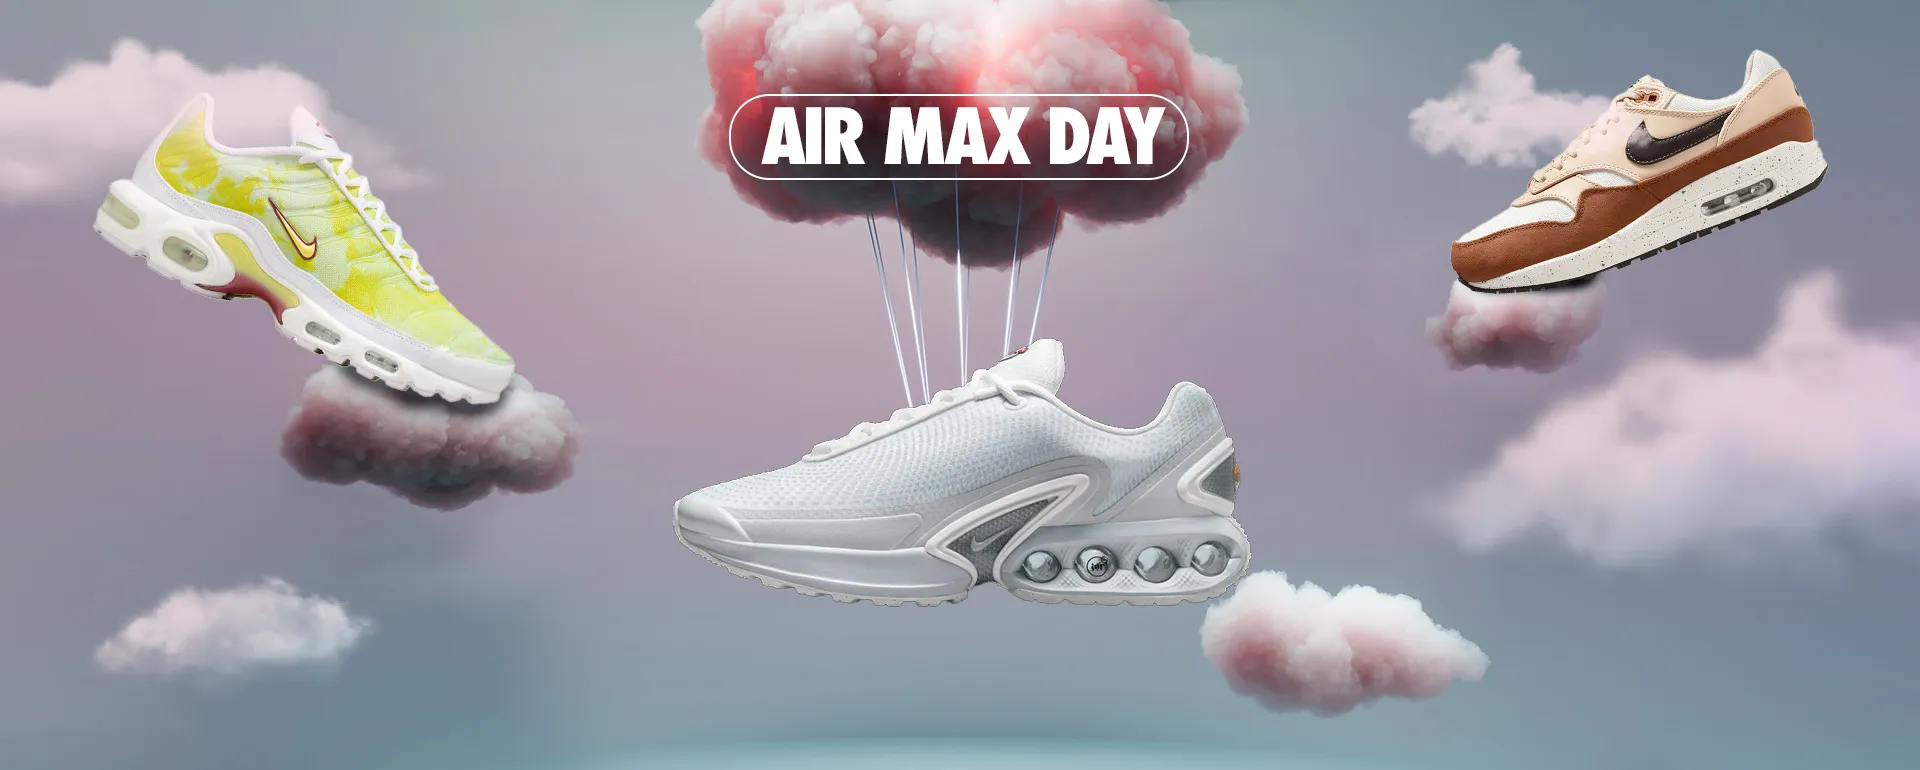 Air max day